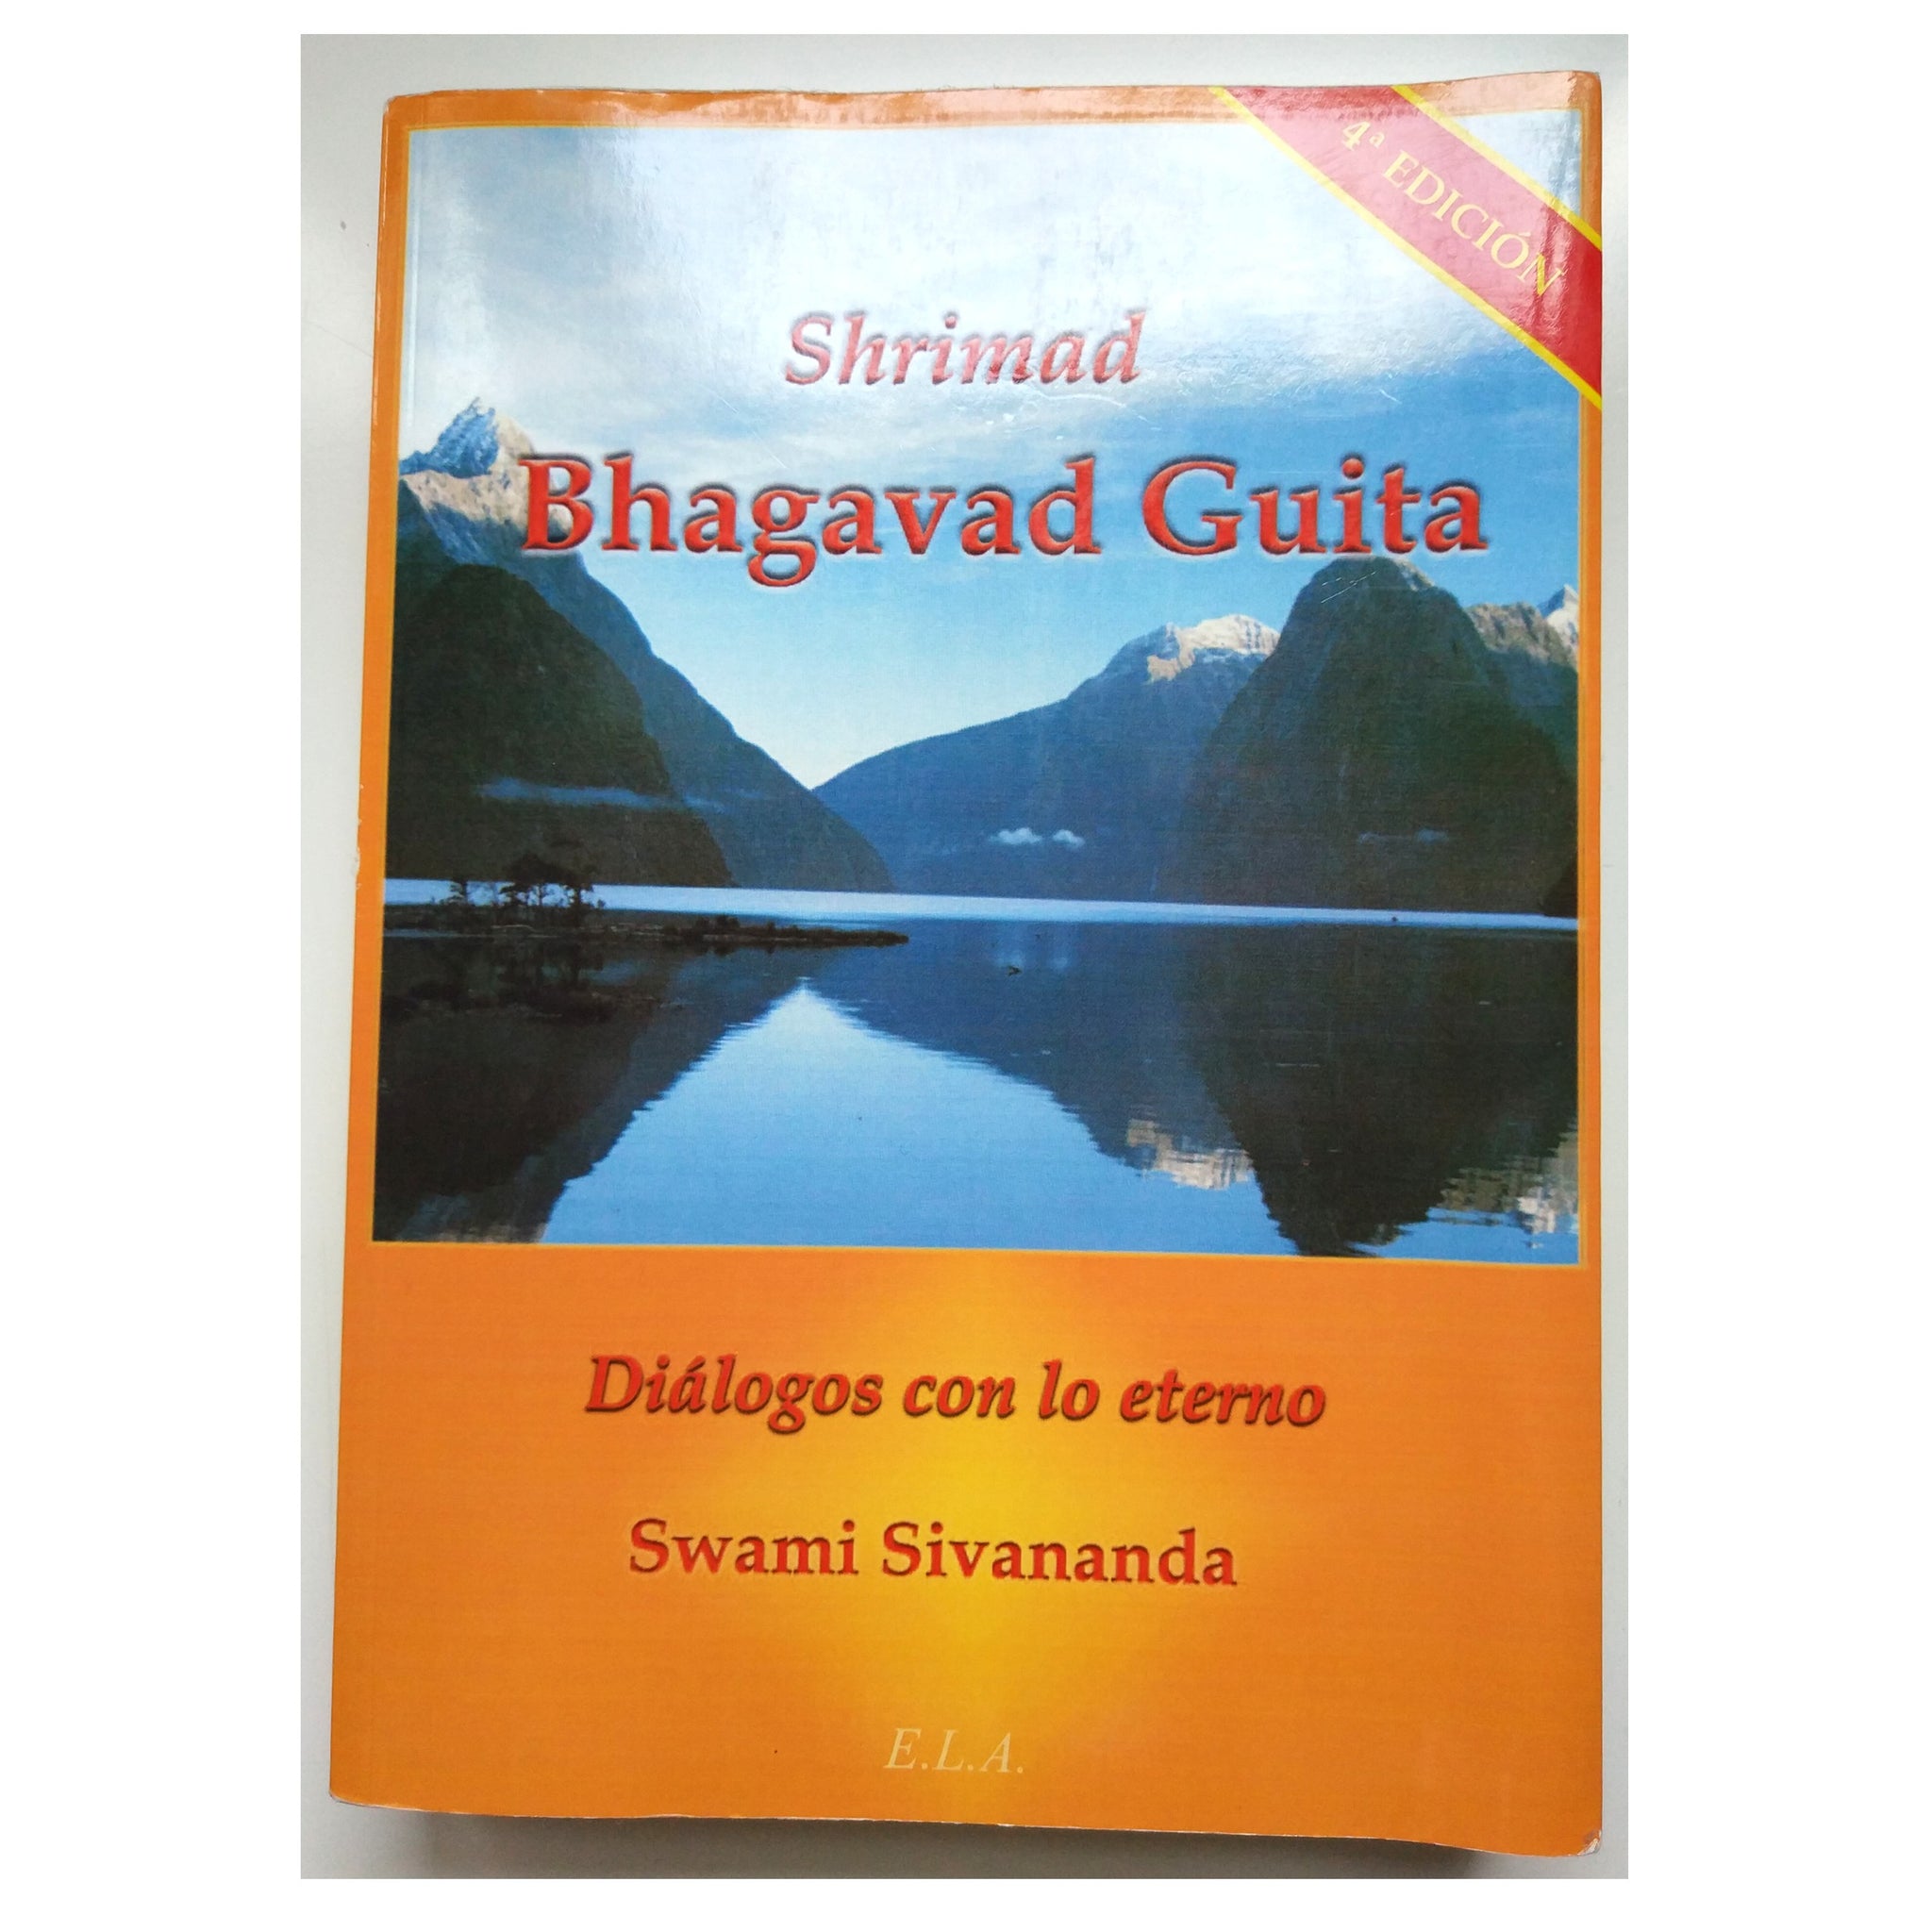 ¿Aun no has leído la Bhagavad Guita?